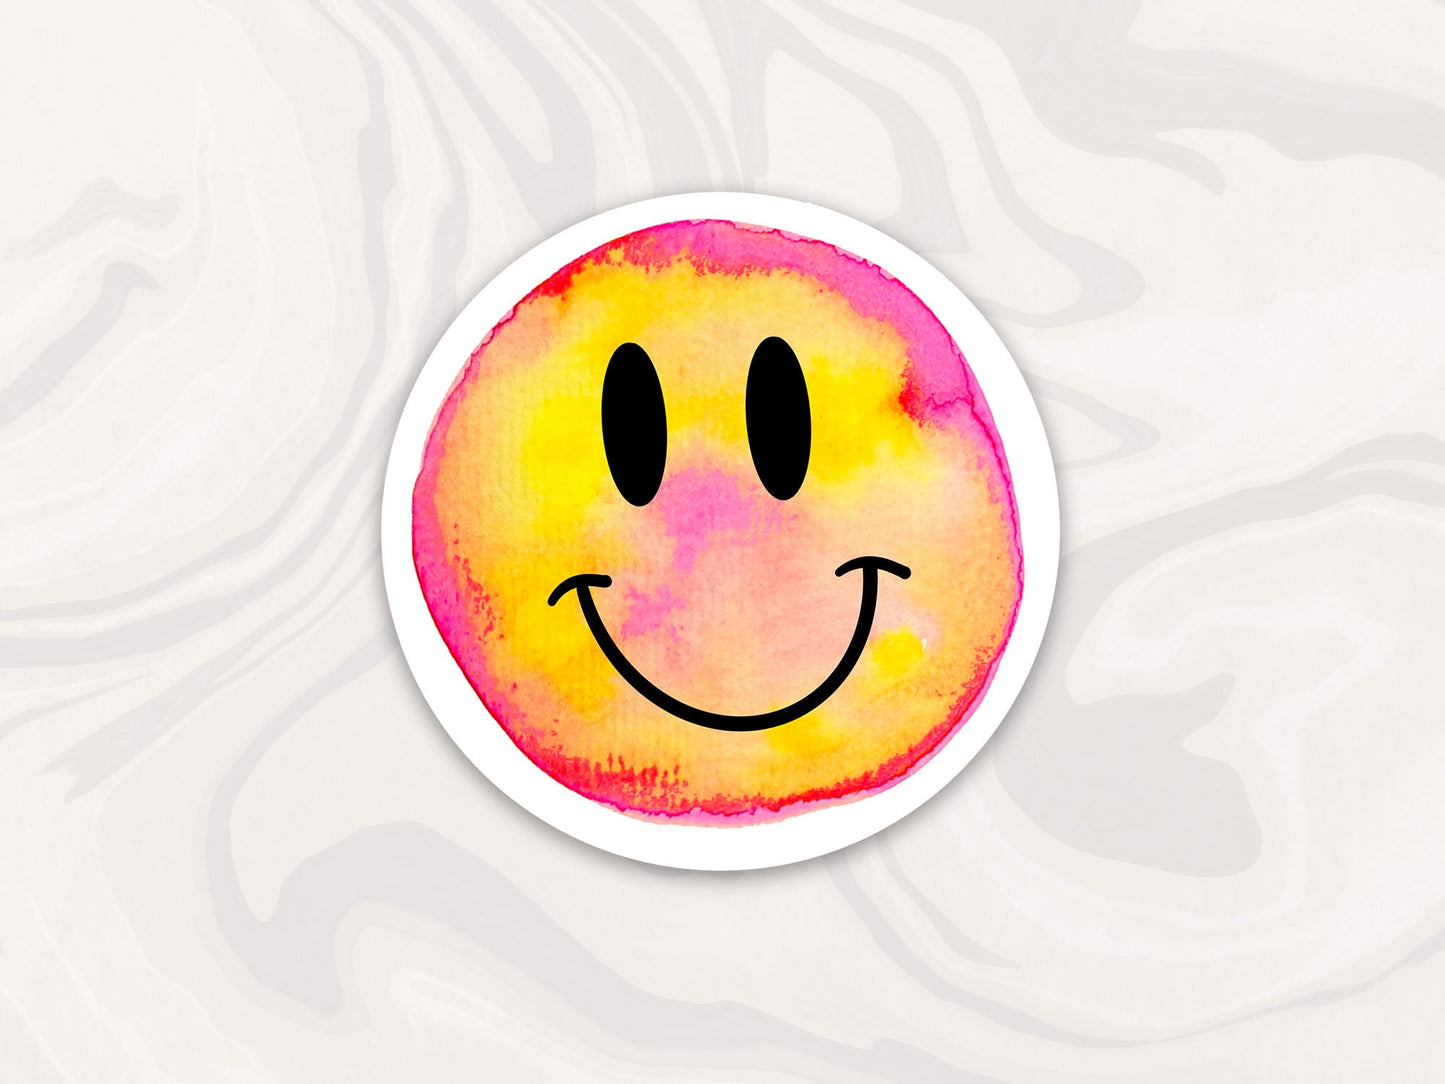 Smiley Face Sticker, Hippie Retro Sticker, Tie Dye Smiley Sticker, Waterproof Decal, Gift